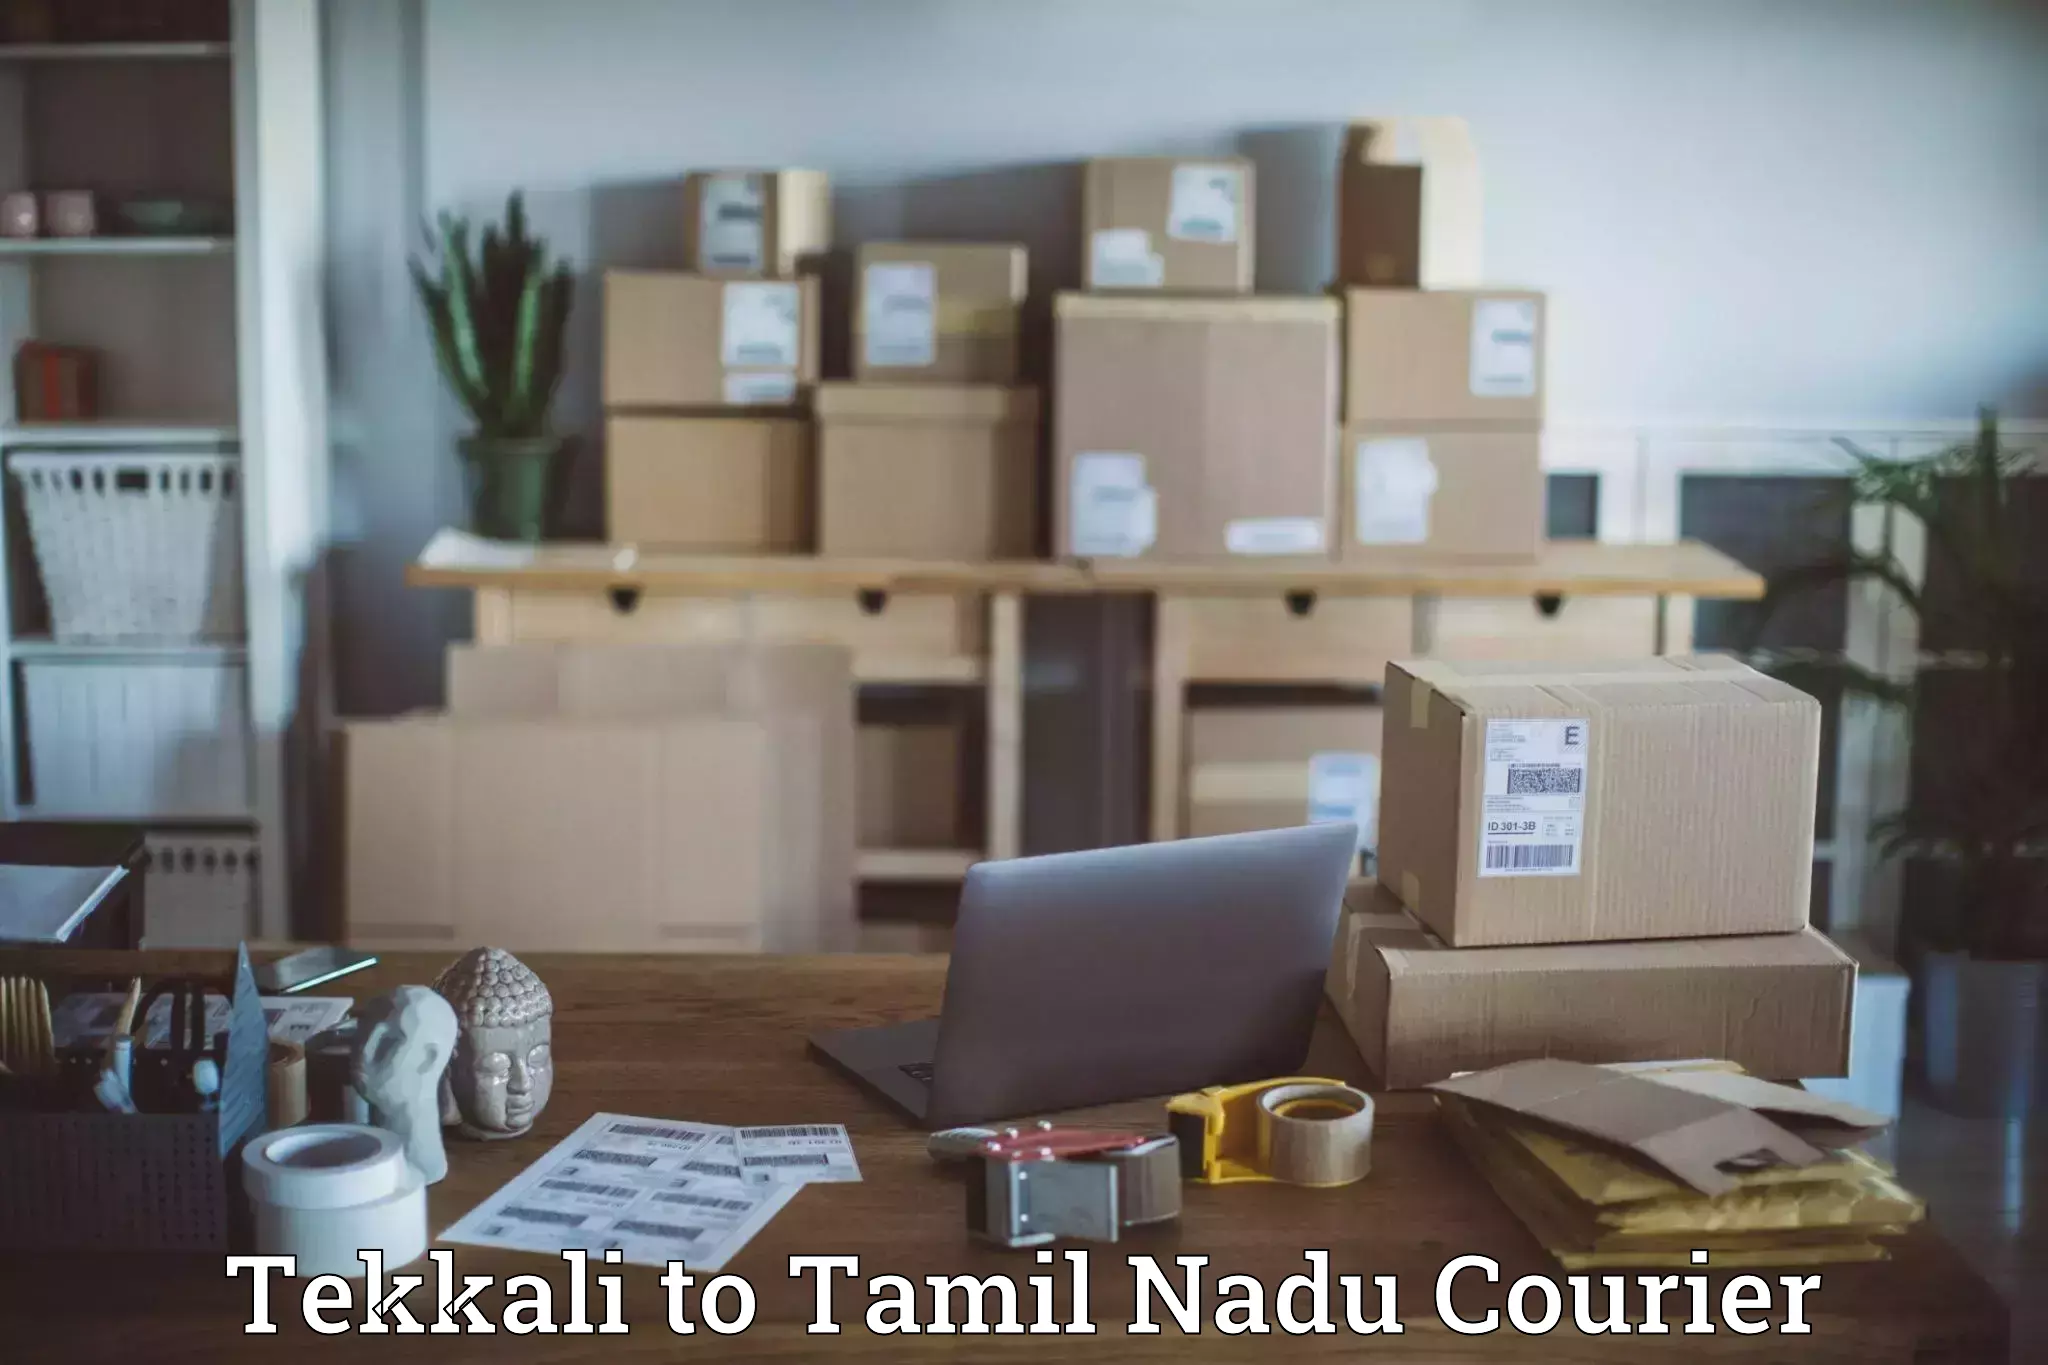 Efficient parcel service Tekkali to Tiruturaipundi